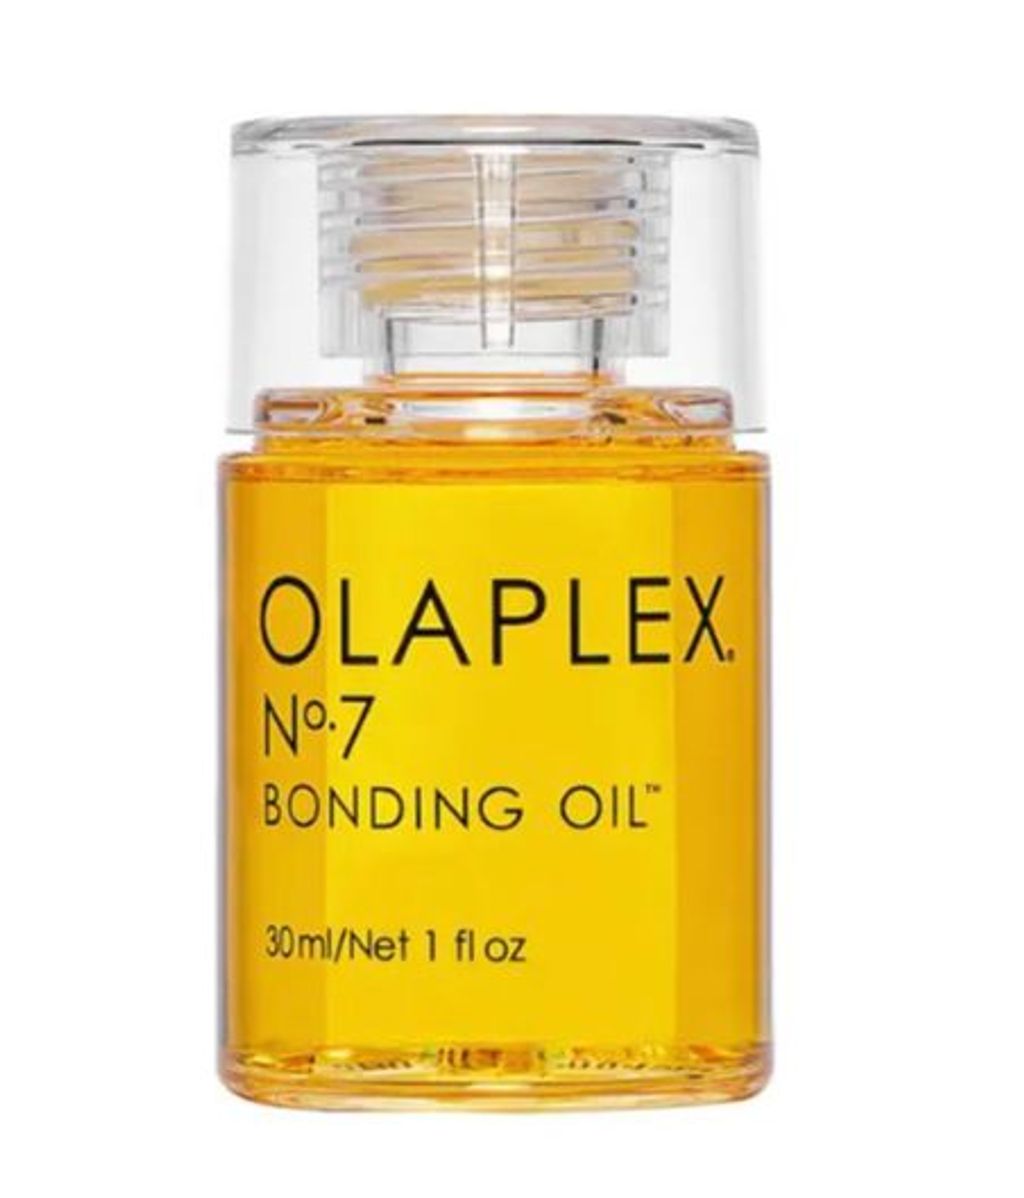 Olaplex N° 7 Bonding Oil